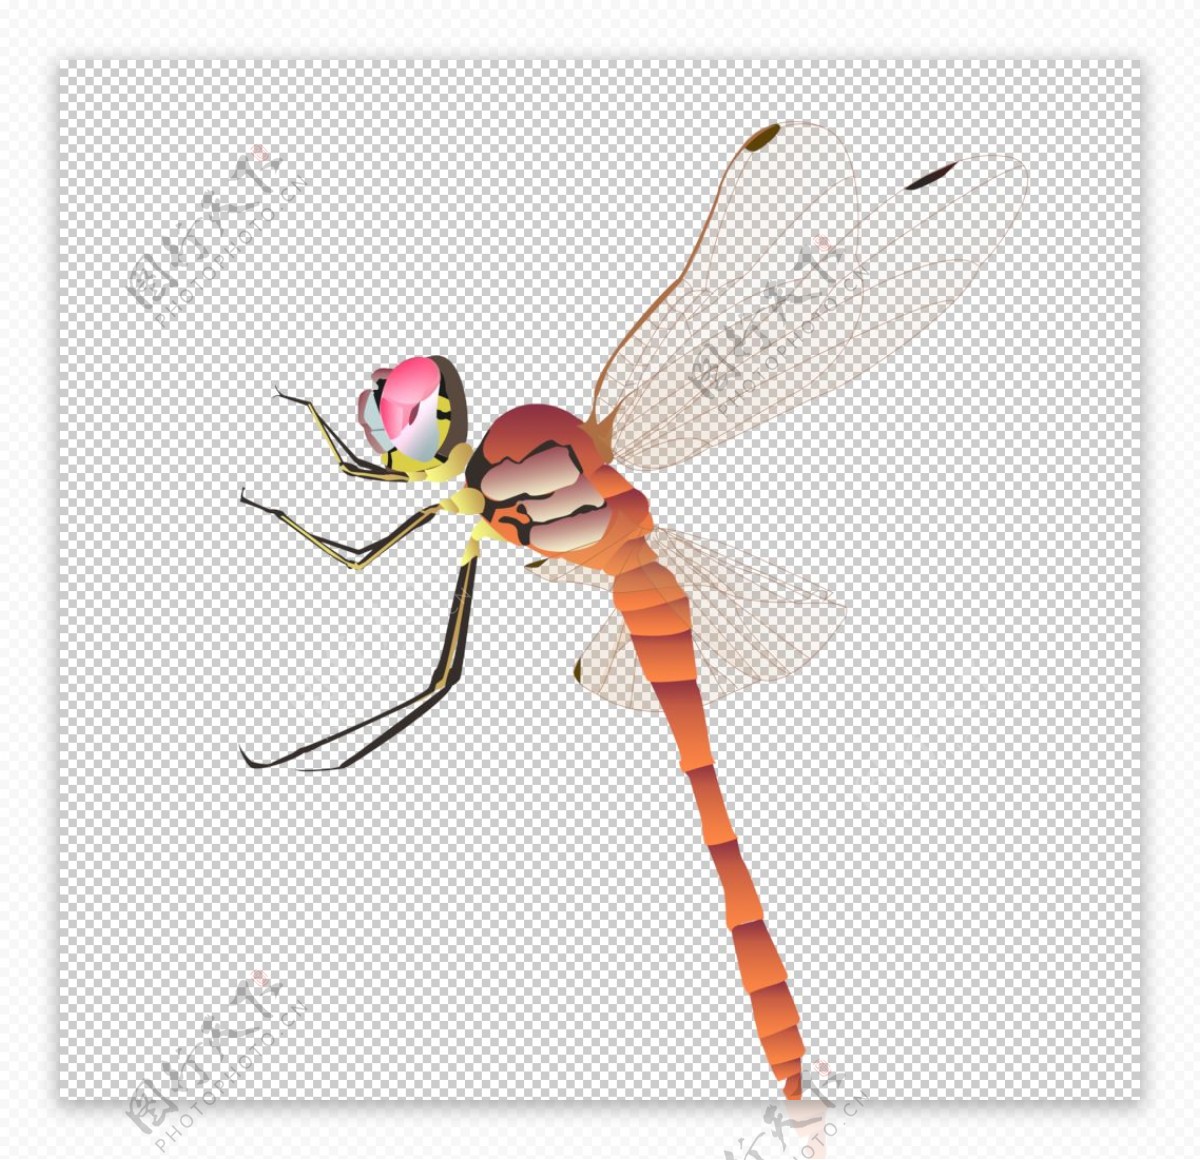 彩色卡通蜻蜓图片下载素材免费下载 - 觅知网